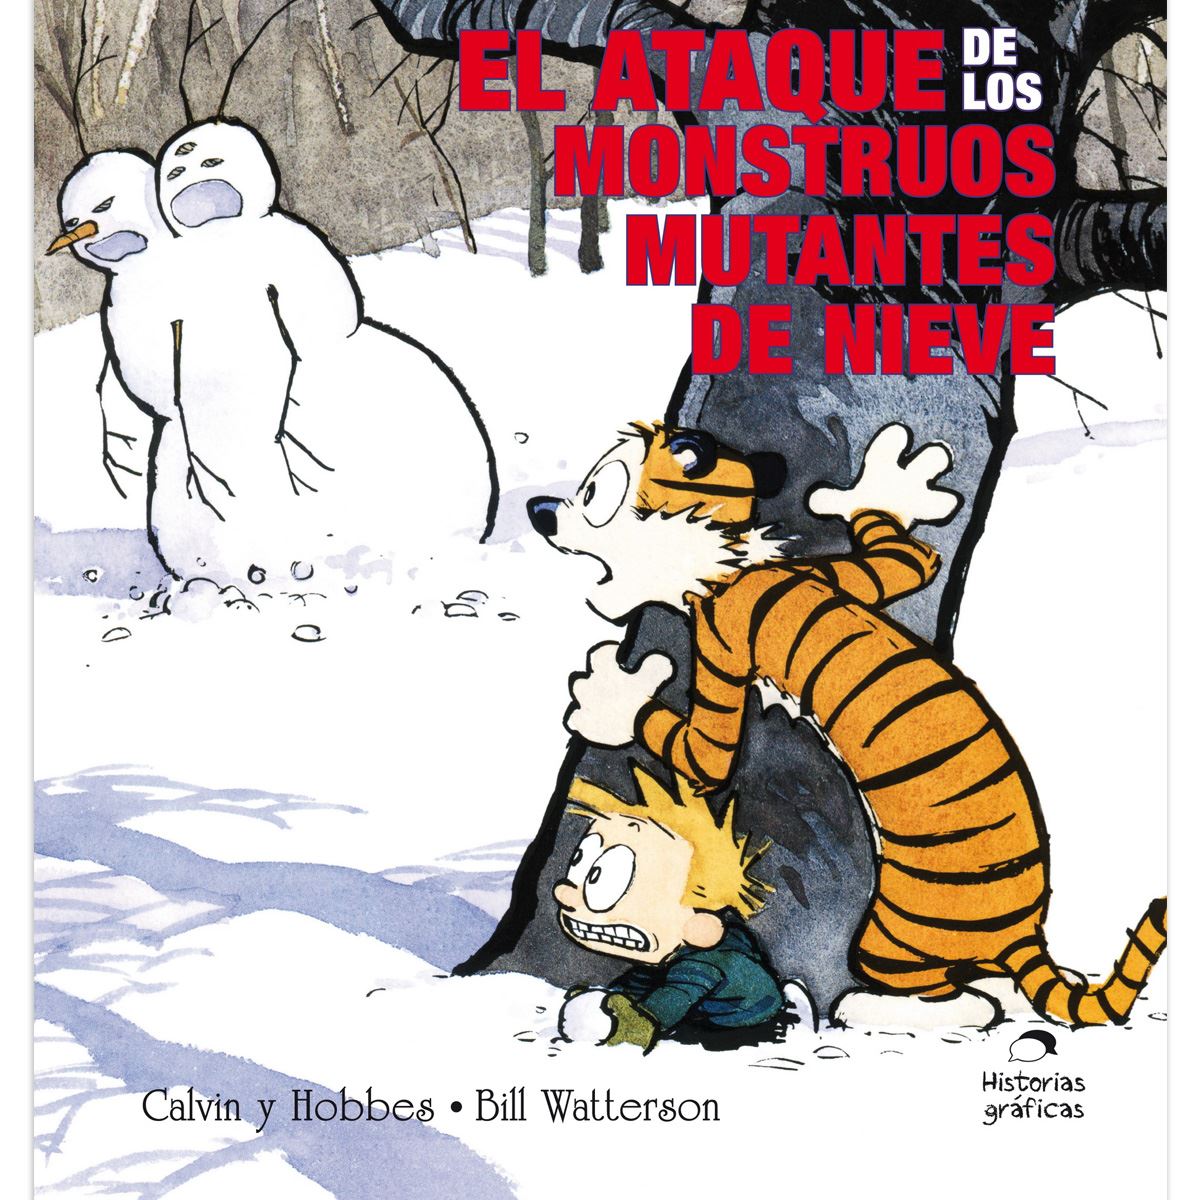 Calvin y hobbes 7. El ataque de los monstruos mutantes de nieve